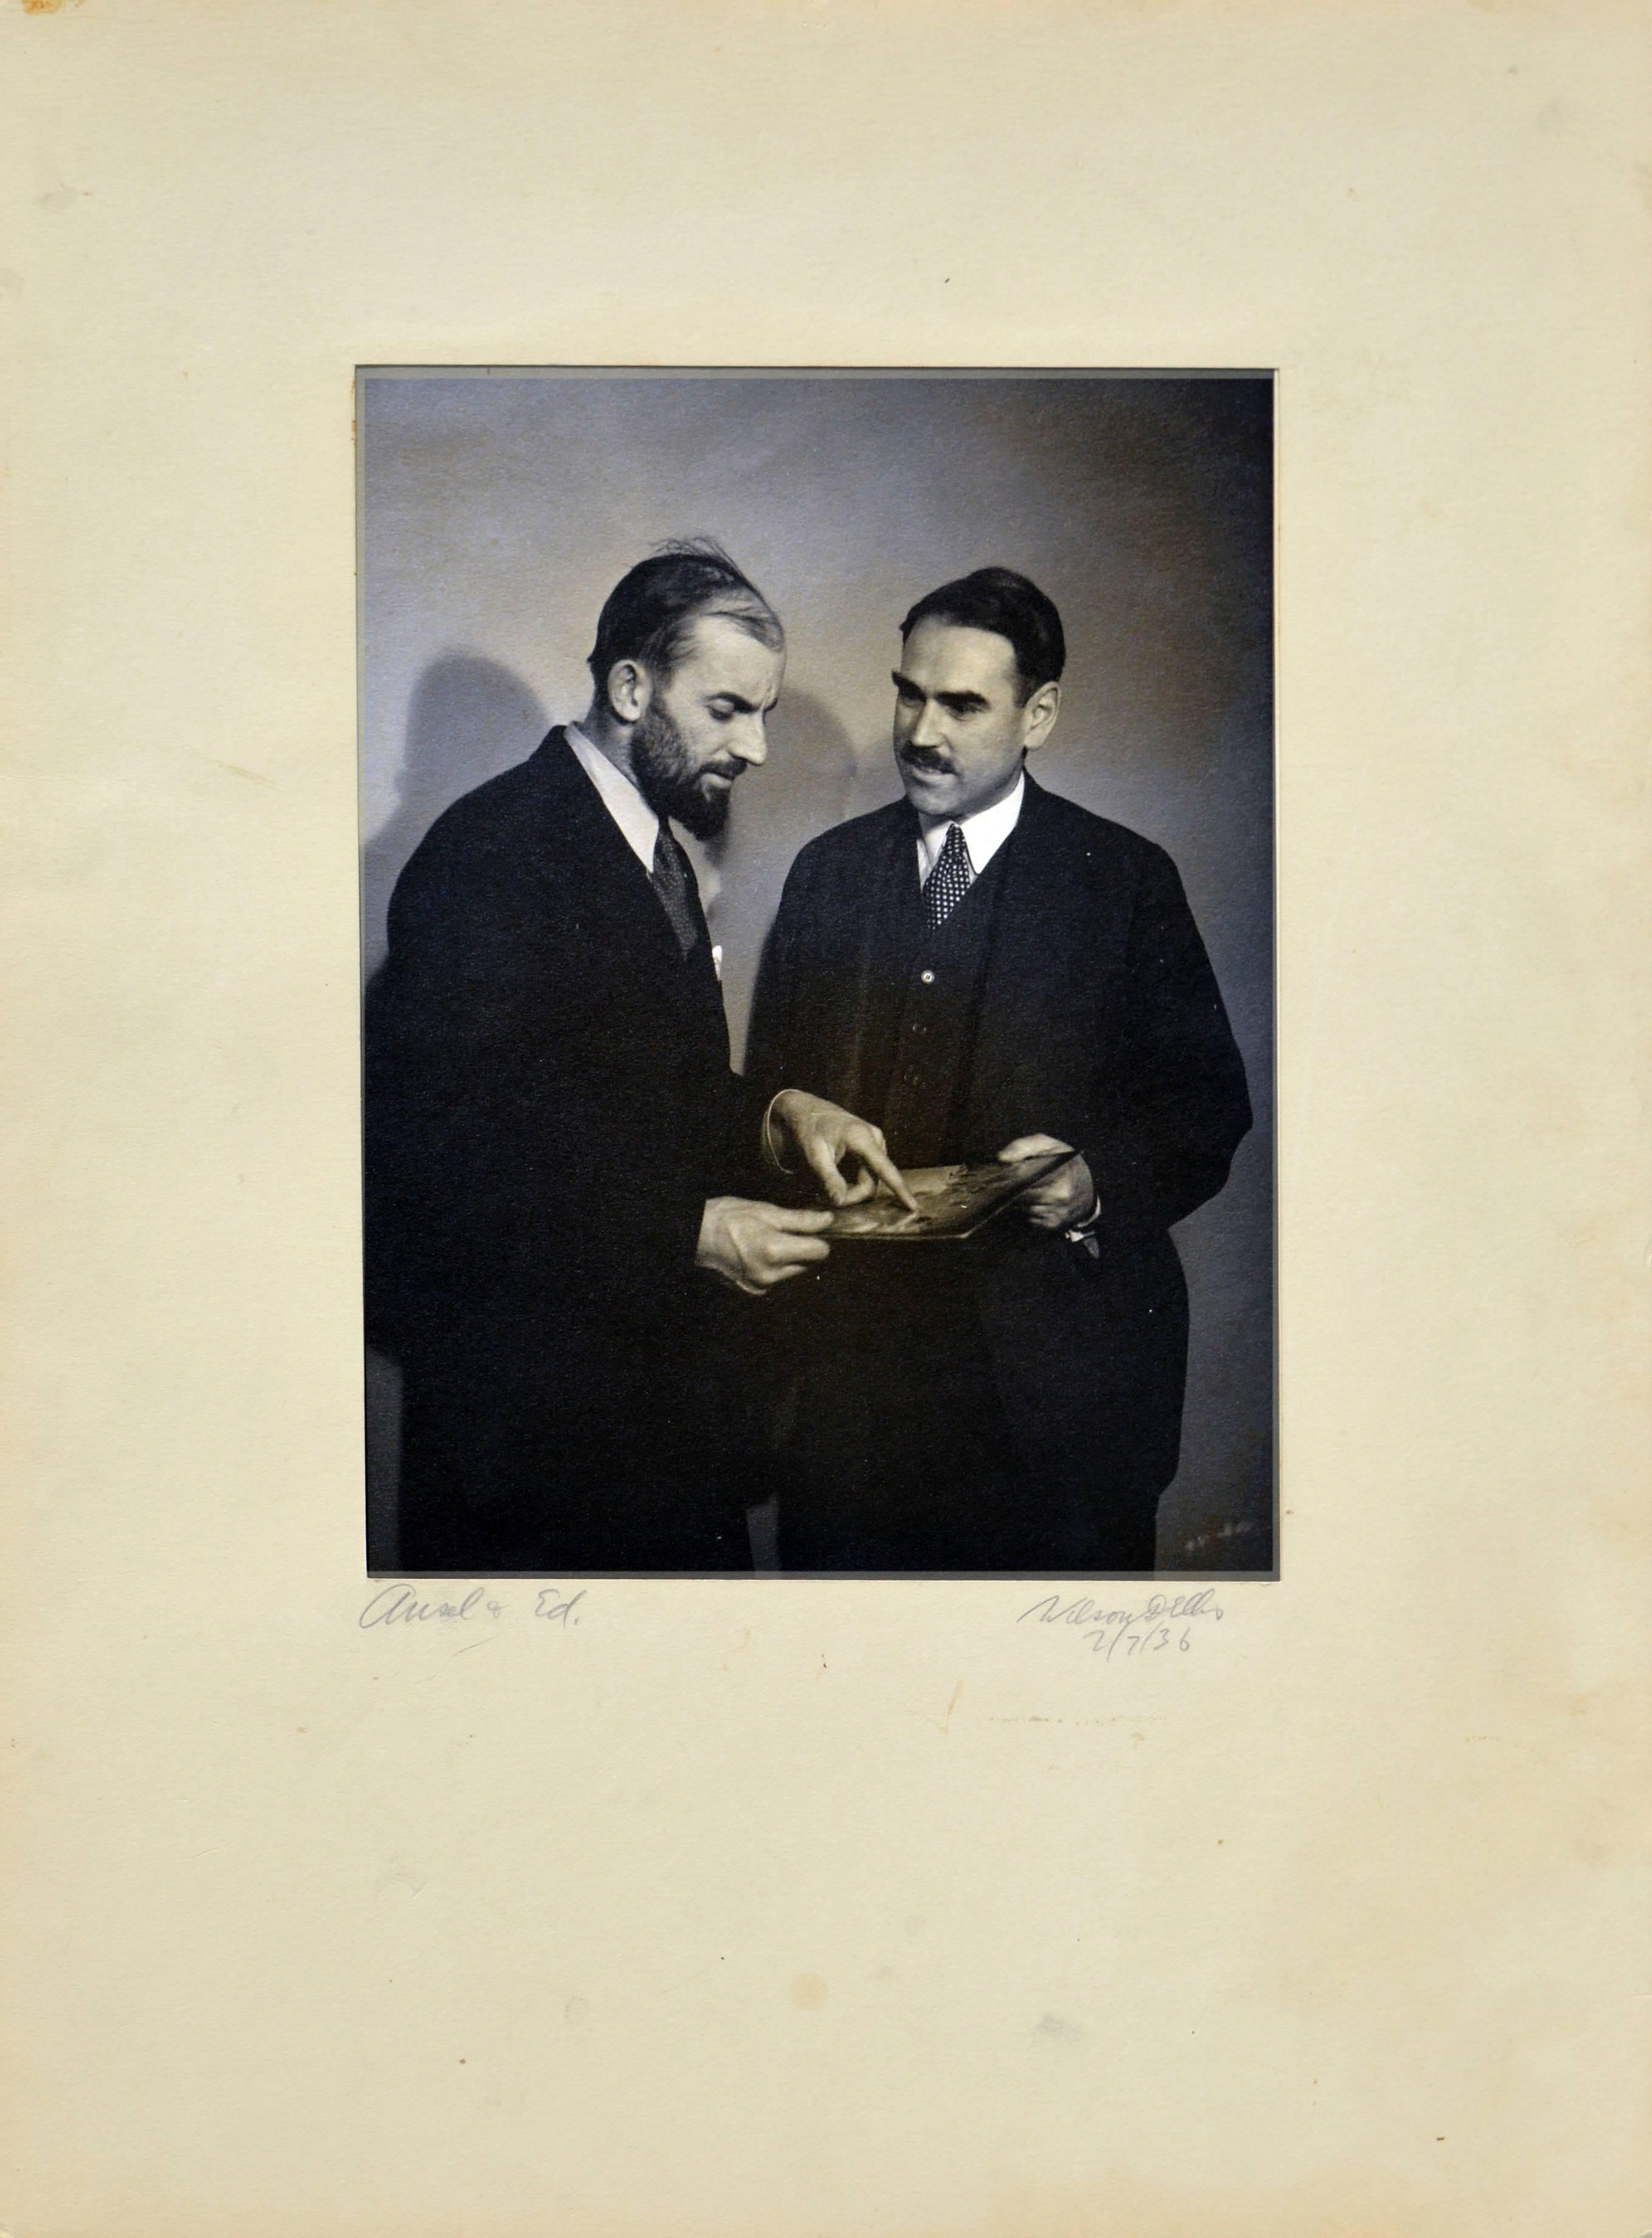 Photographie d'Ansel Adams et Ed Towler des années 1930